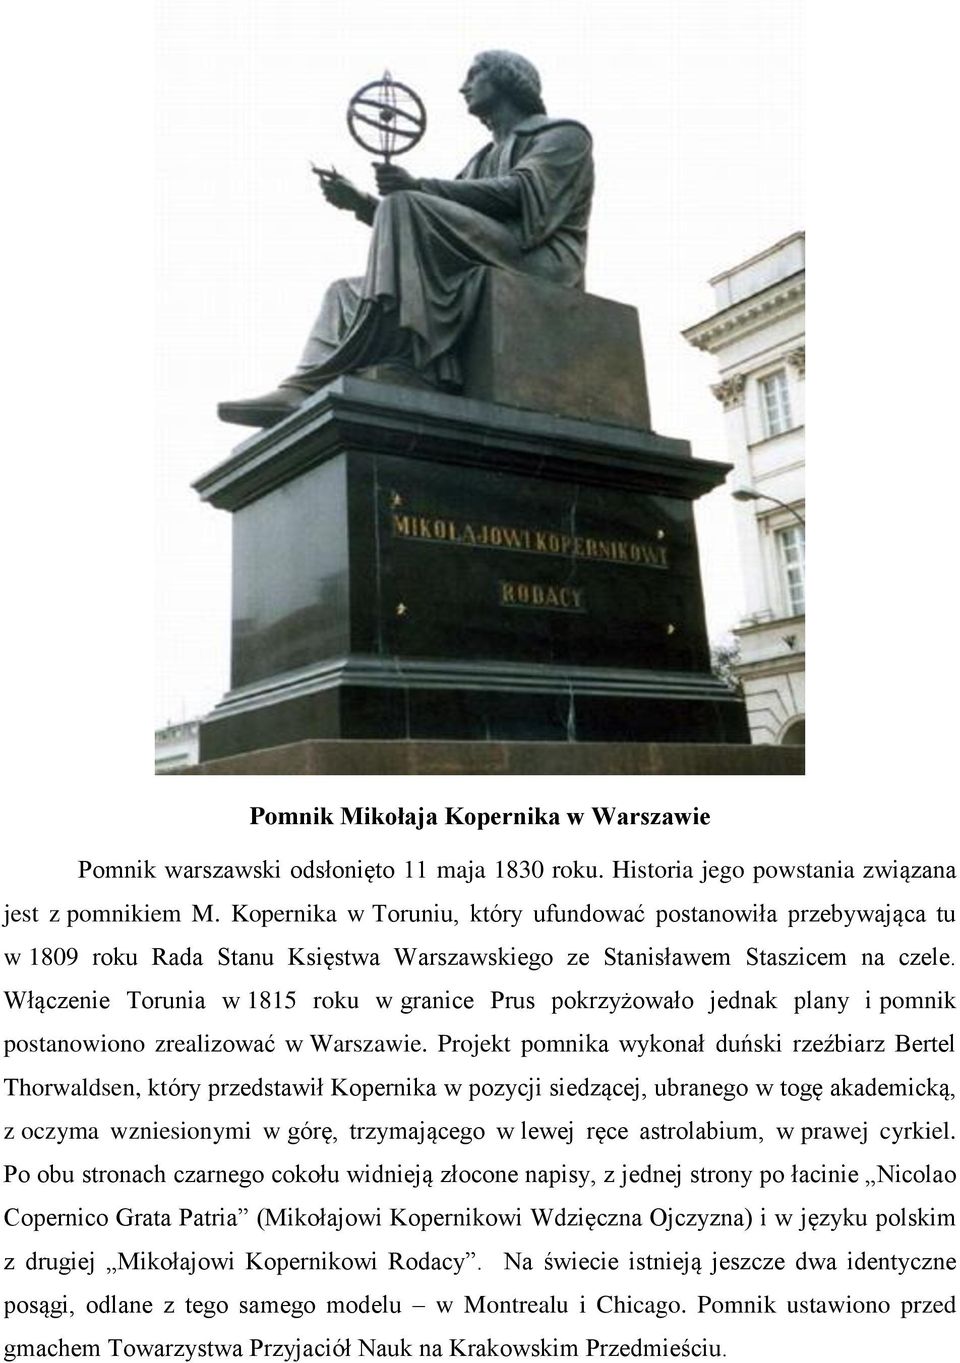 Włączenie Torunia w 1815 roku w granice Prus pokrzyżowało jednak plany i pomnik postanowiono zrealizować w Warszawie.